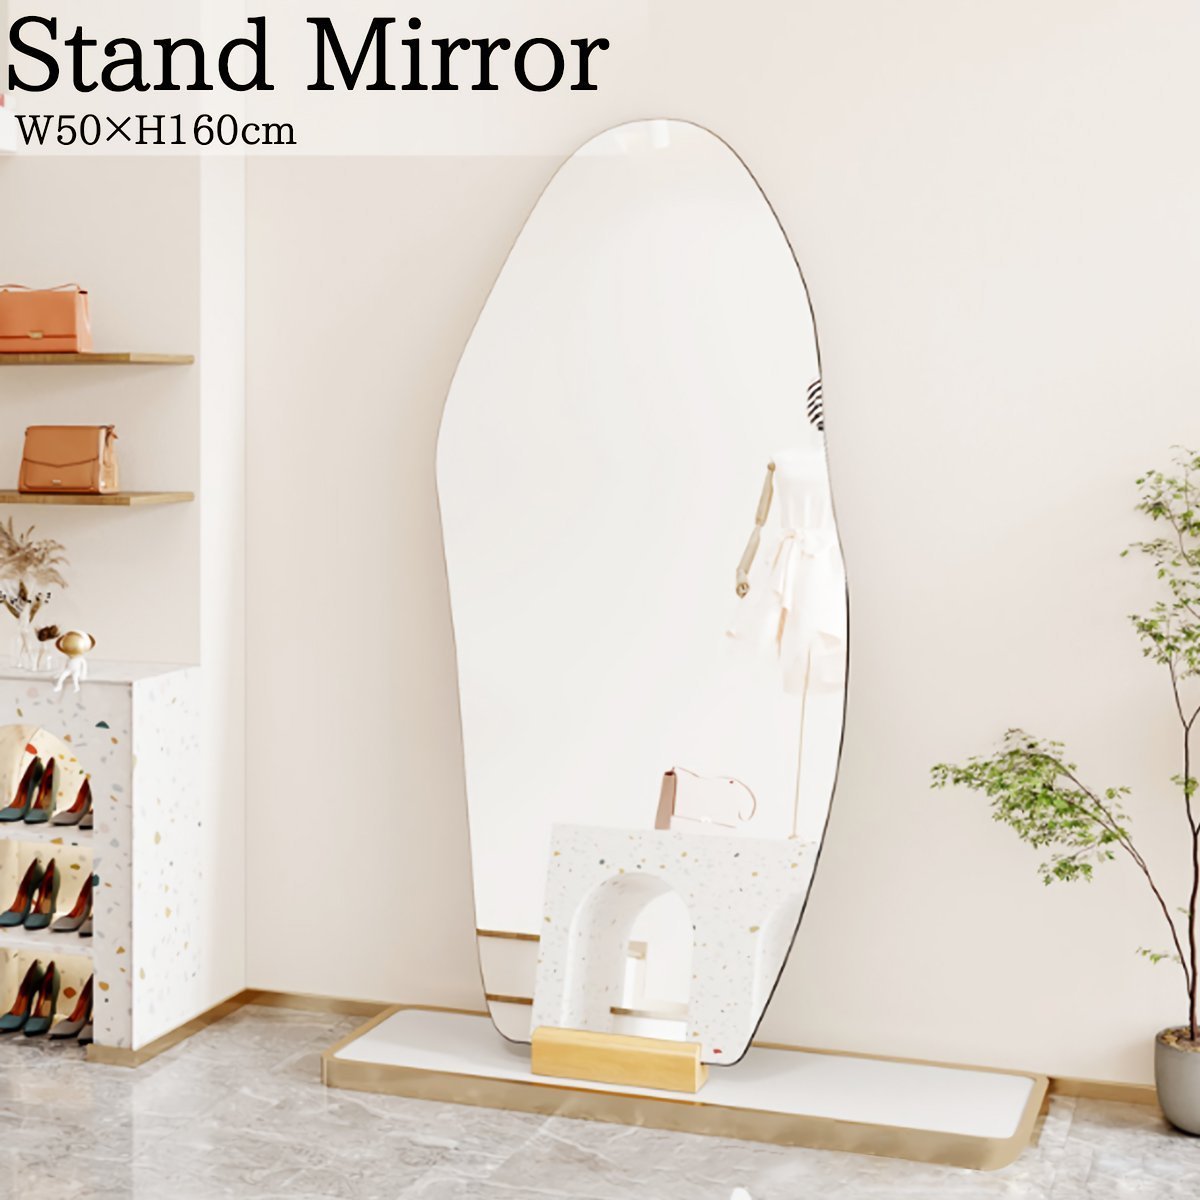 スタンド式 ミラー 壁掛け 全身 鏡 姿見鏡 160cmx50cm 1523 www